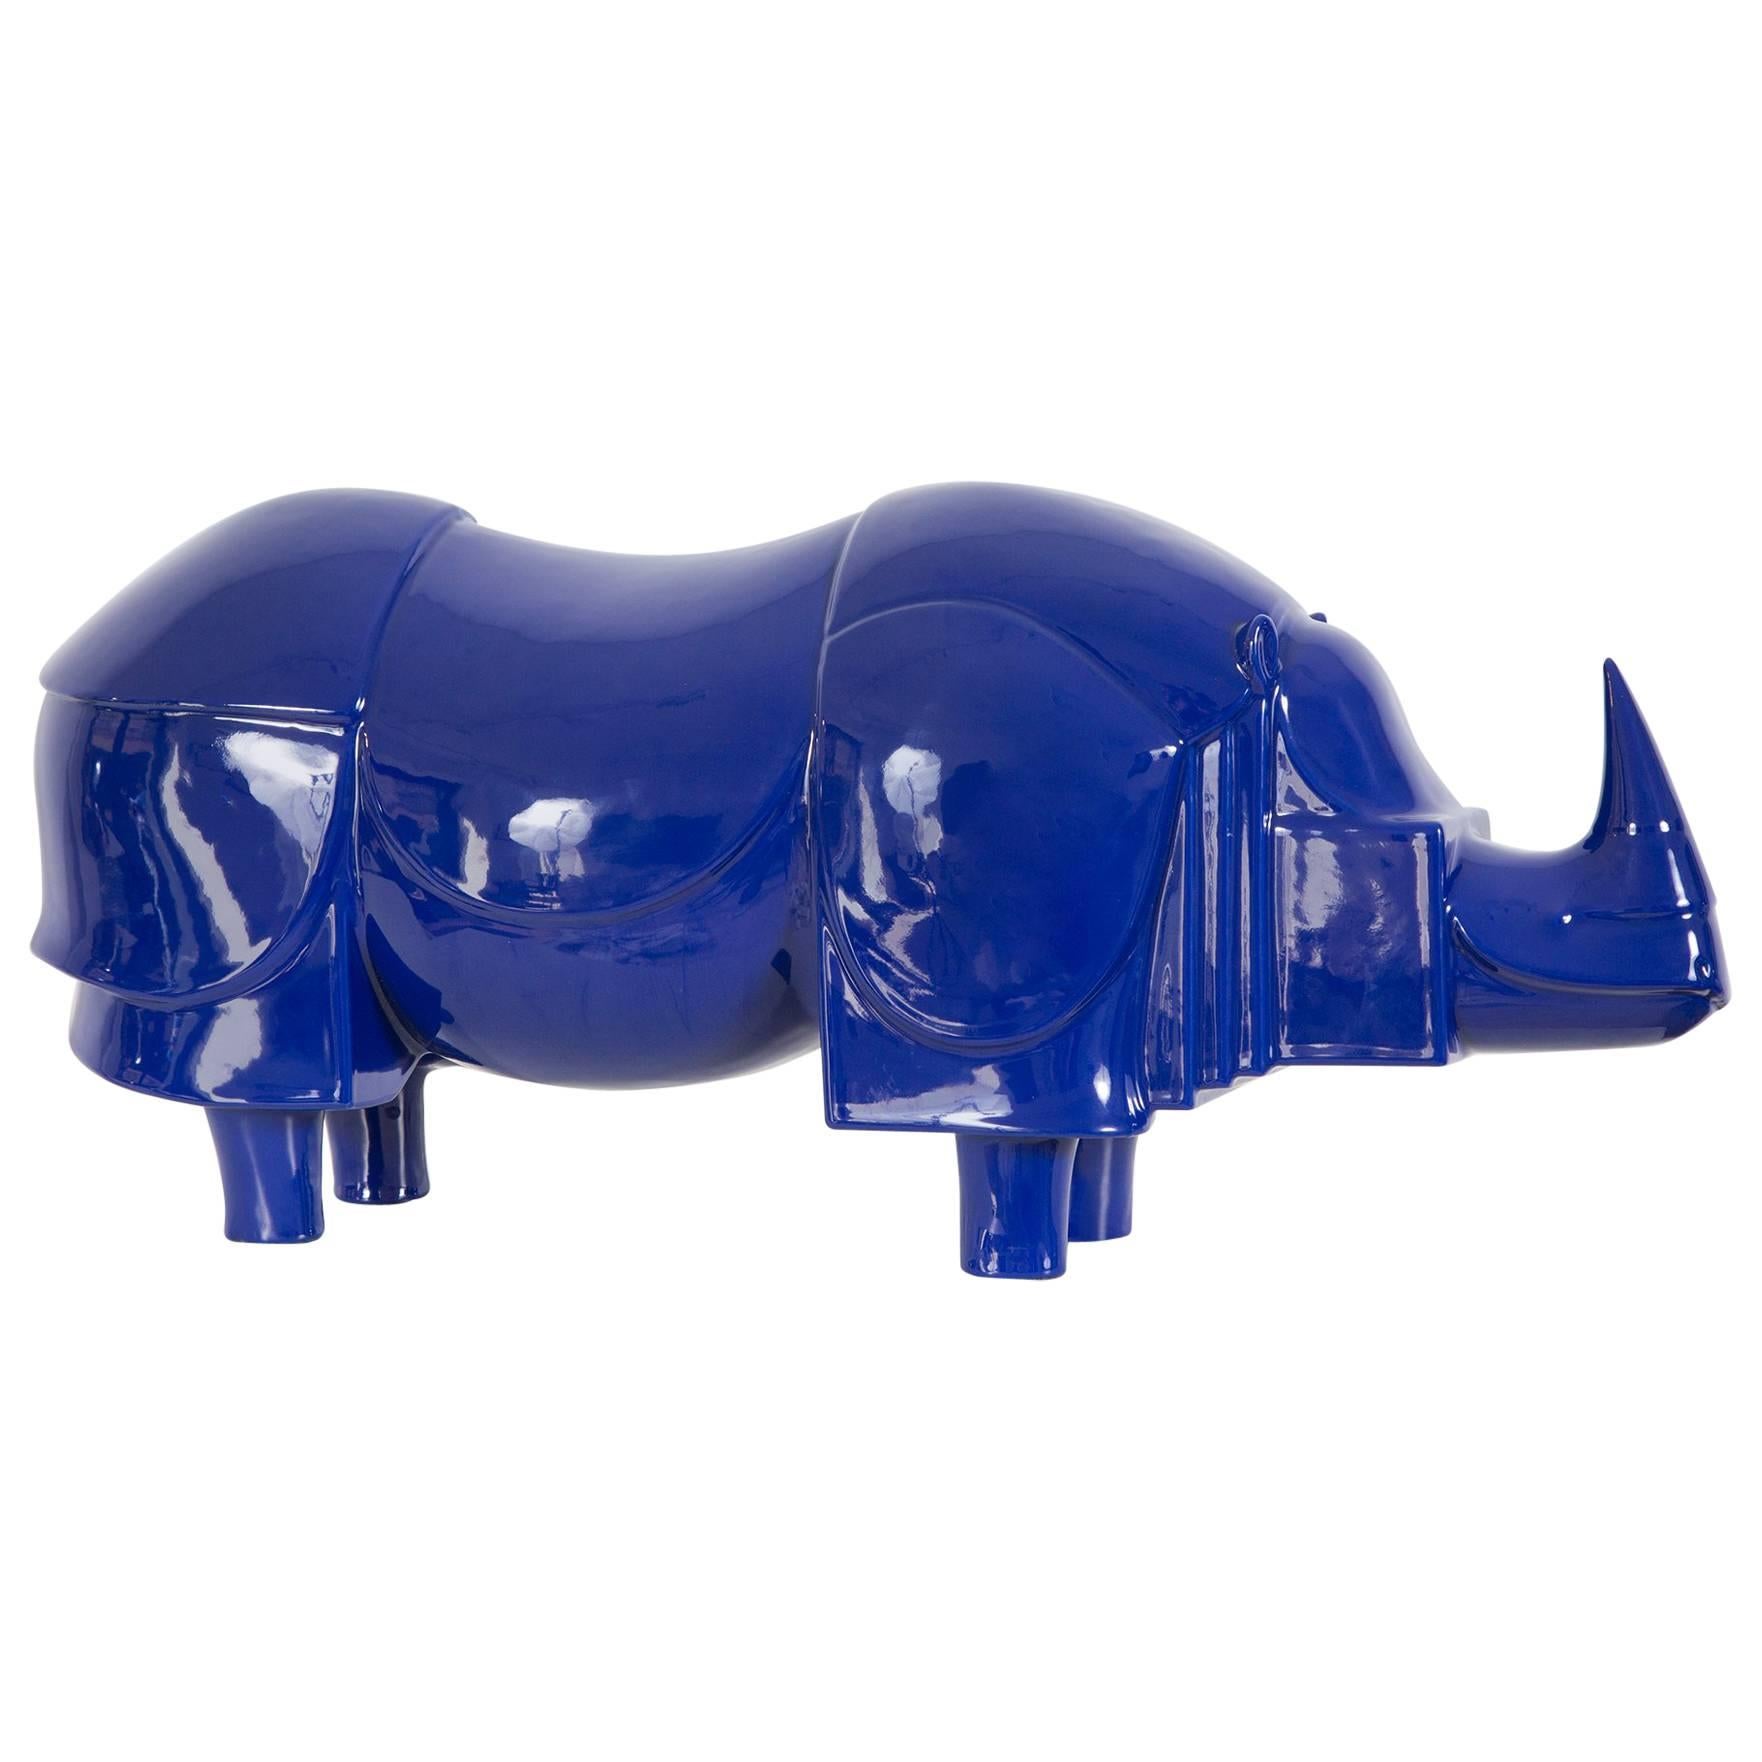 "Rhinoceros Bleu" by Lalanne, 1981